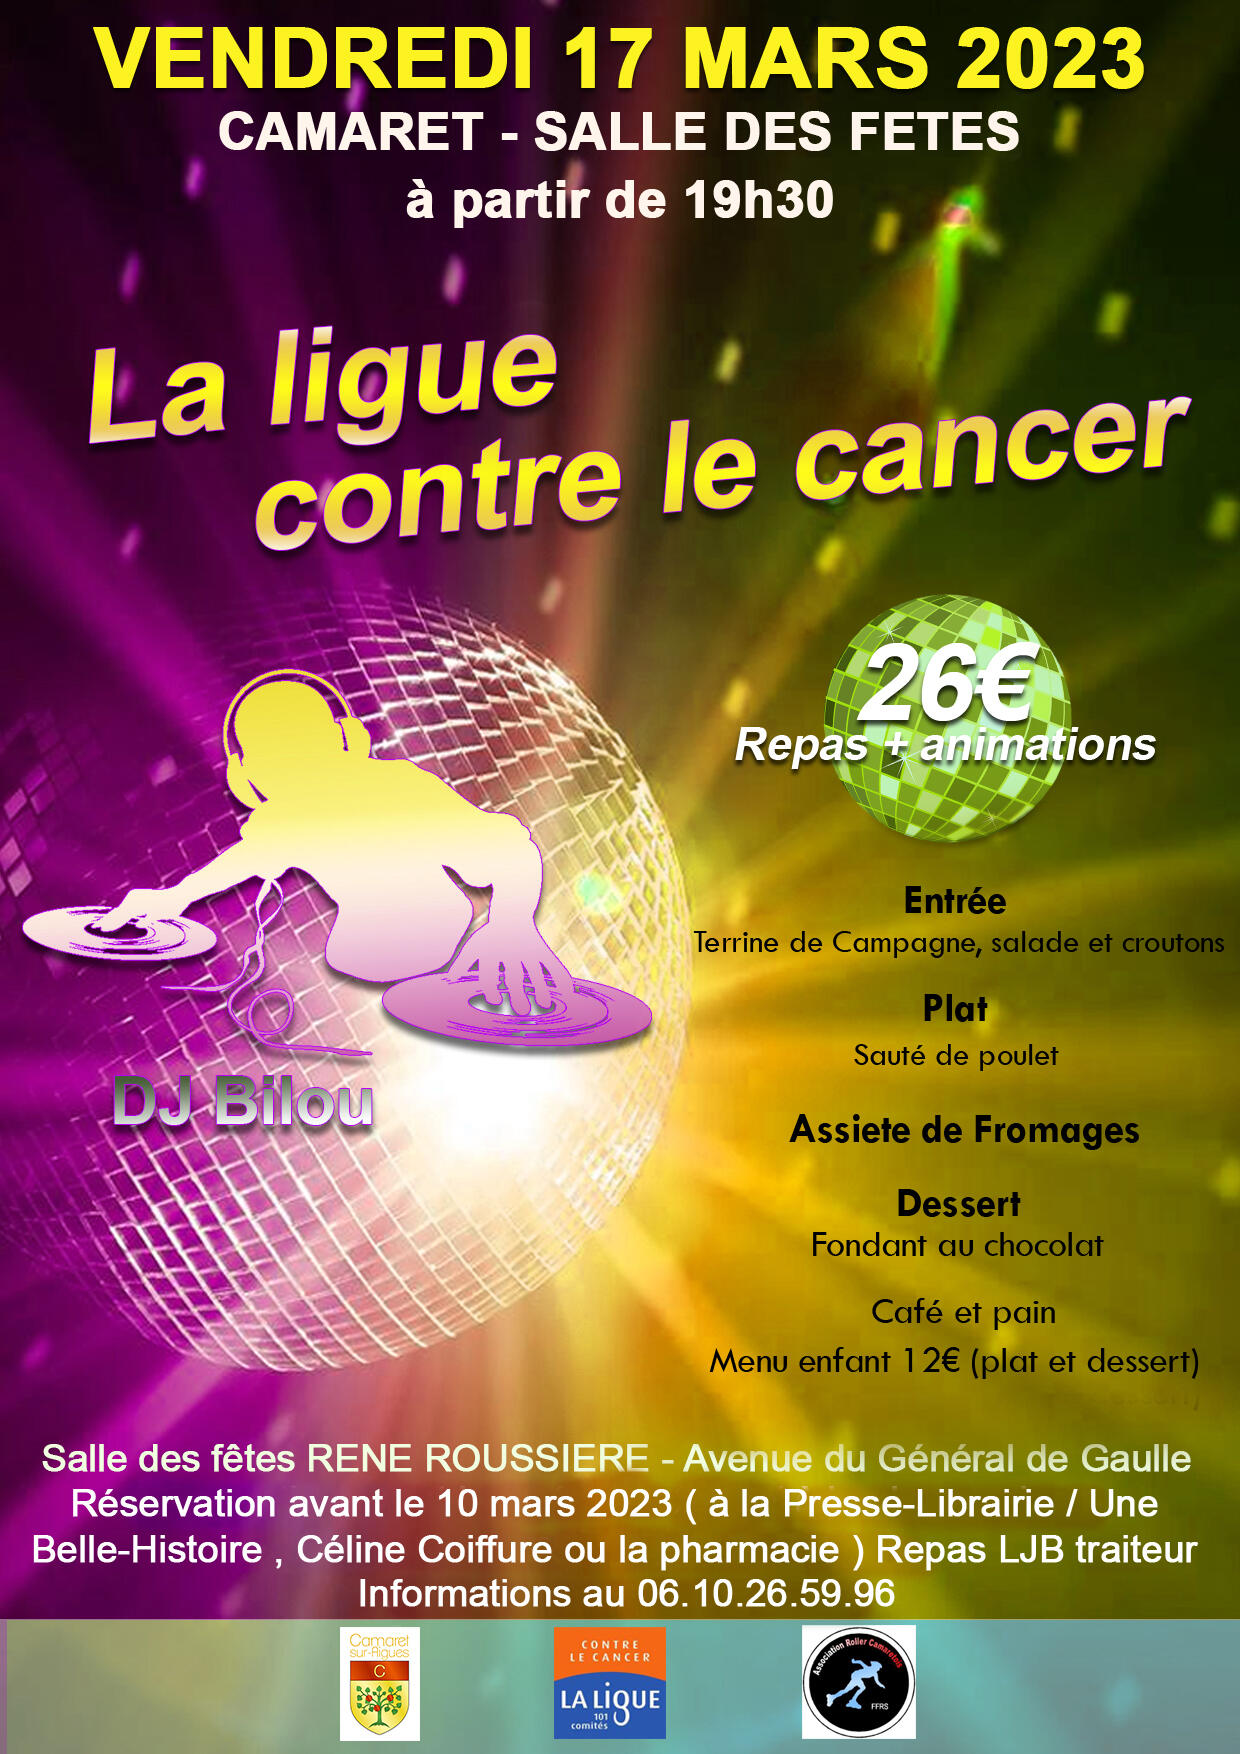 Soirée de La Ligue contre le cancer - Comité de Vaucluse (84) le vendredi 17 mars 2023 à 19h30 à la salle René Roussière